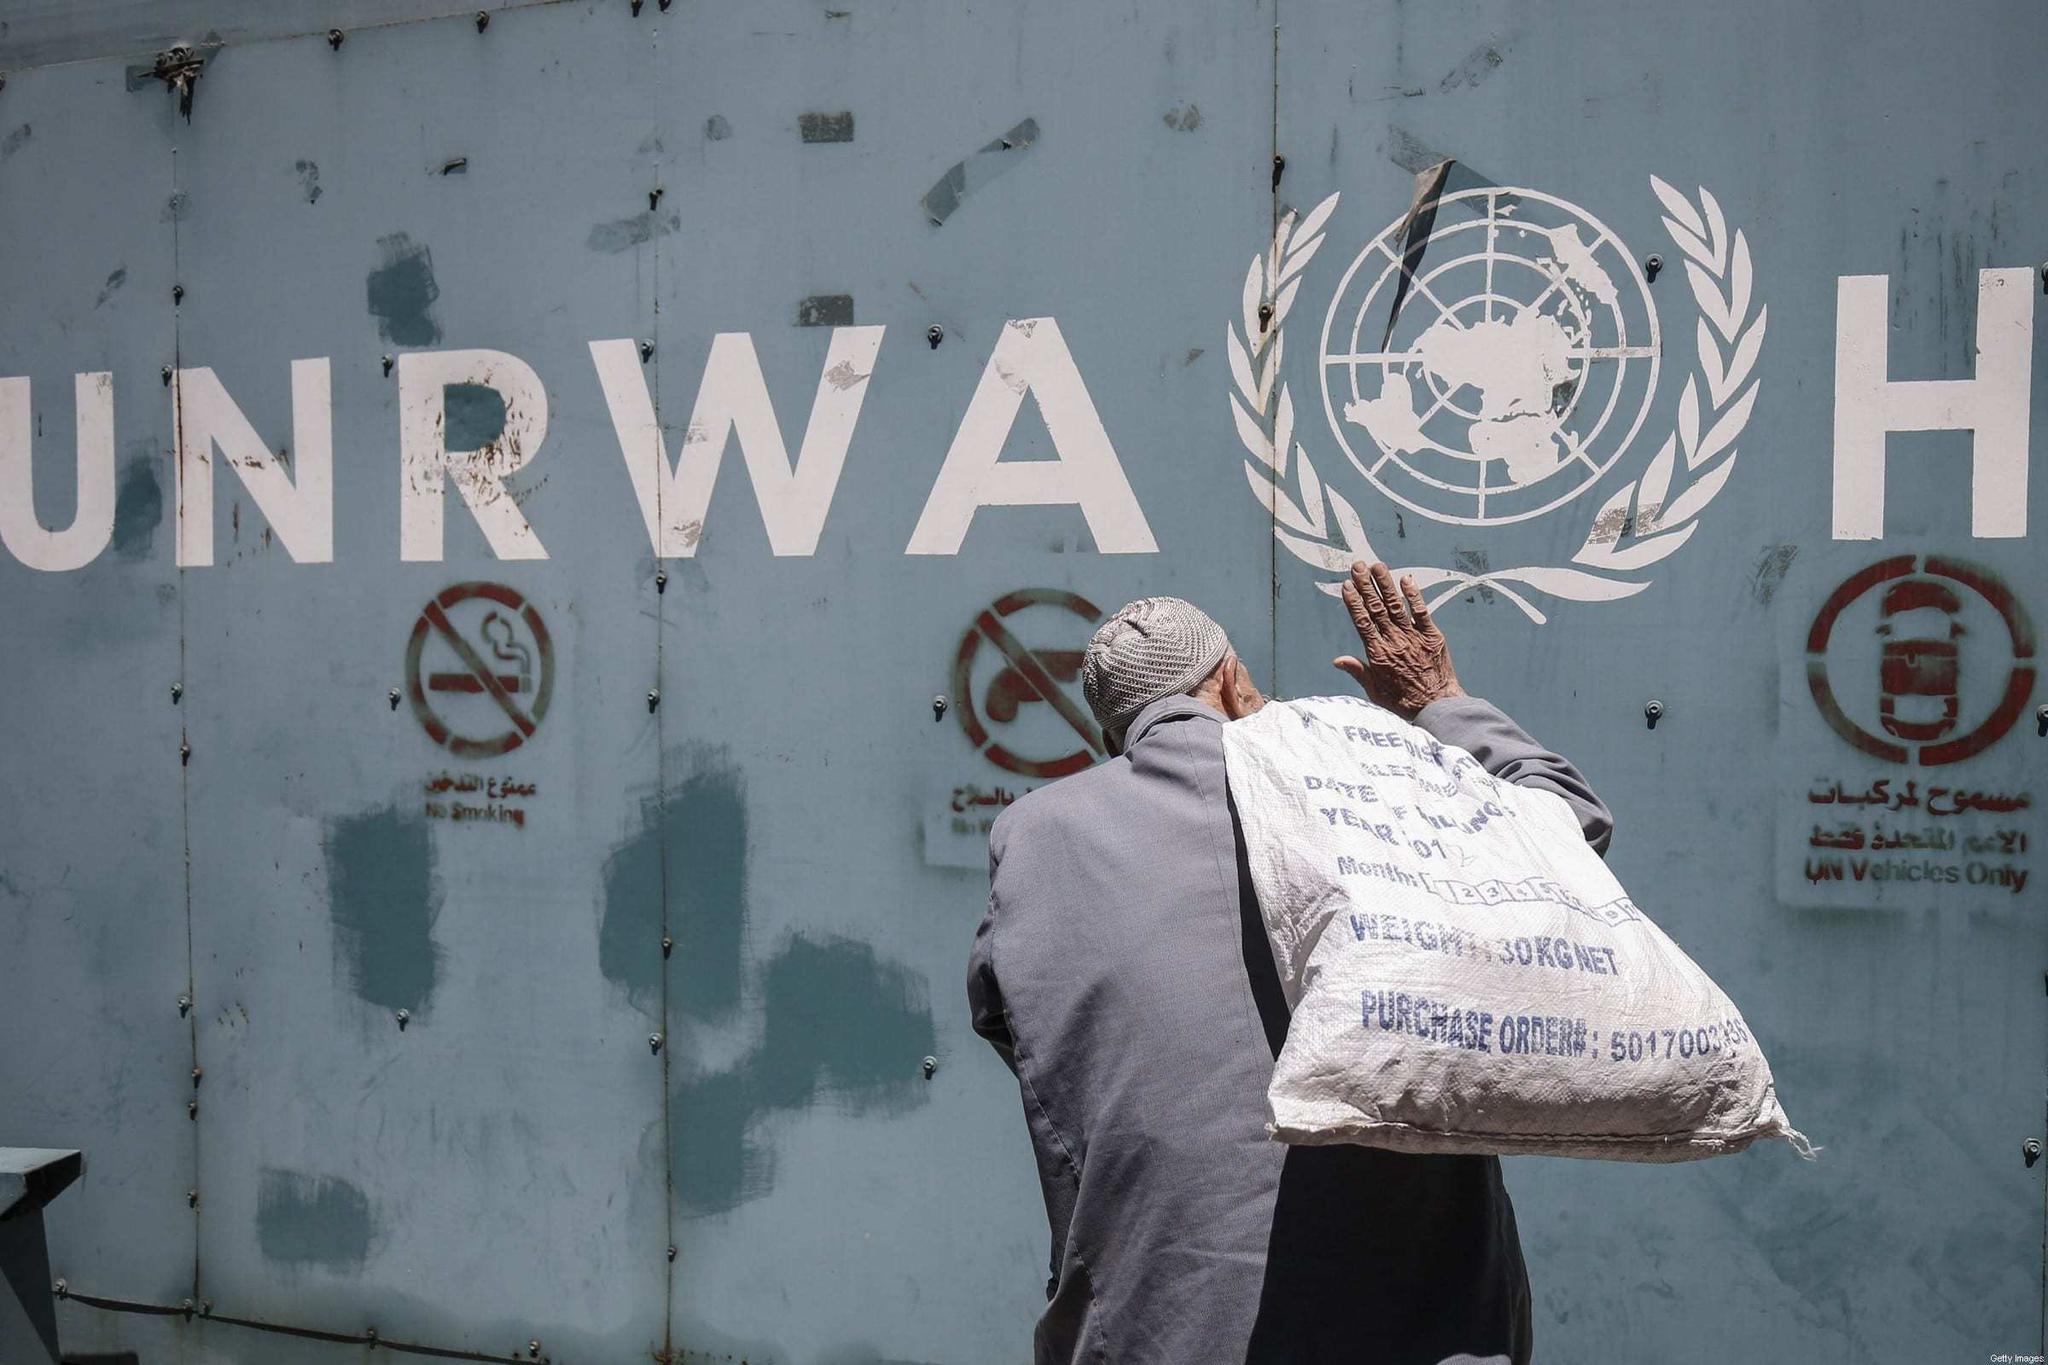 巴勒斯坦成为联合国观察员国 分析称象征意义不容小觑[1]- 中国日报网